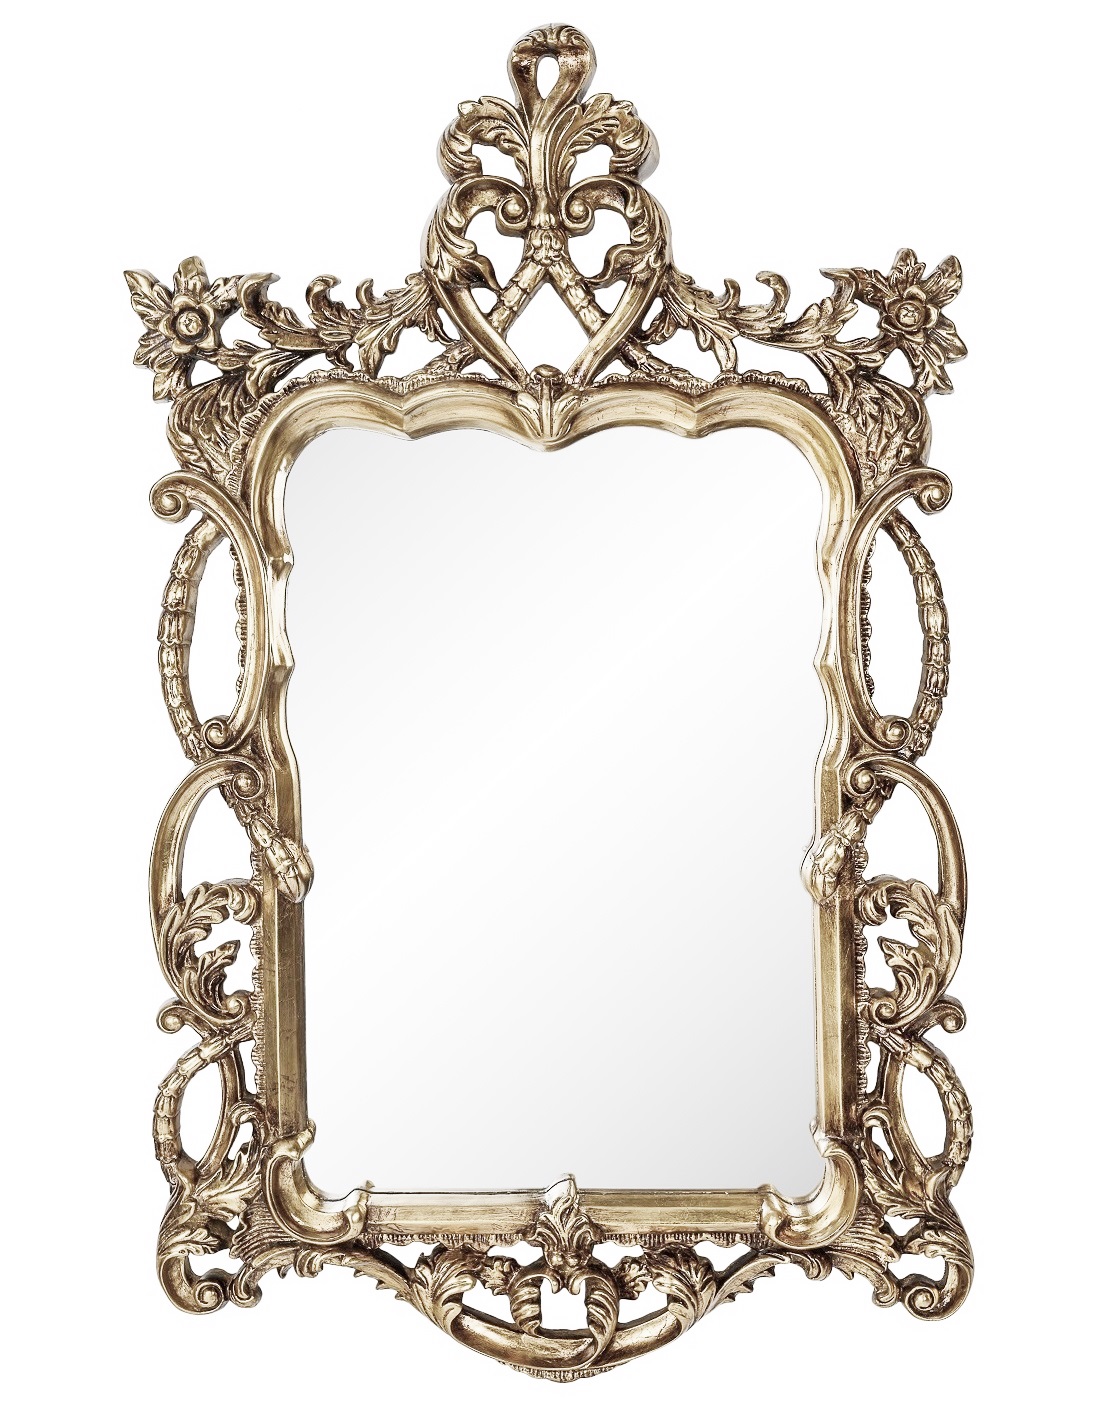 Зеркало в резной раме Floret Silver фото и цена, купить